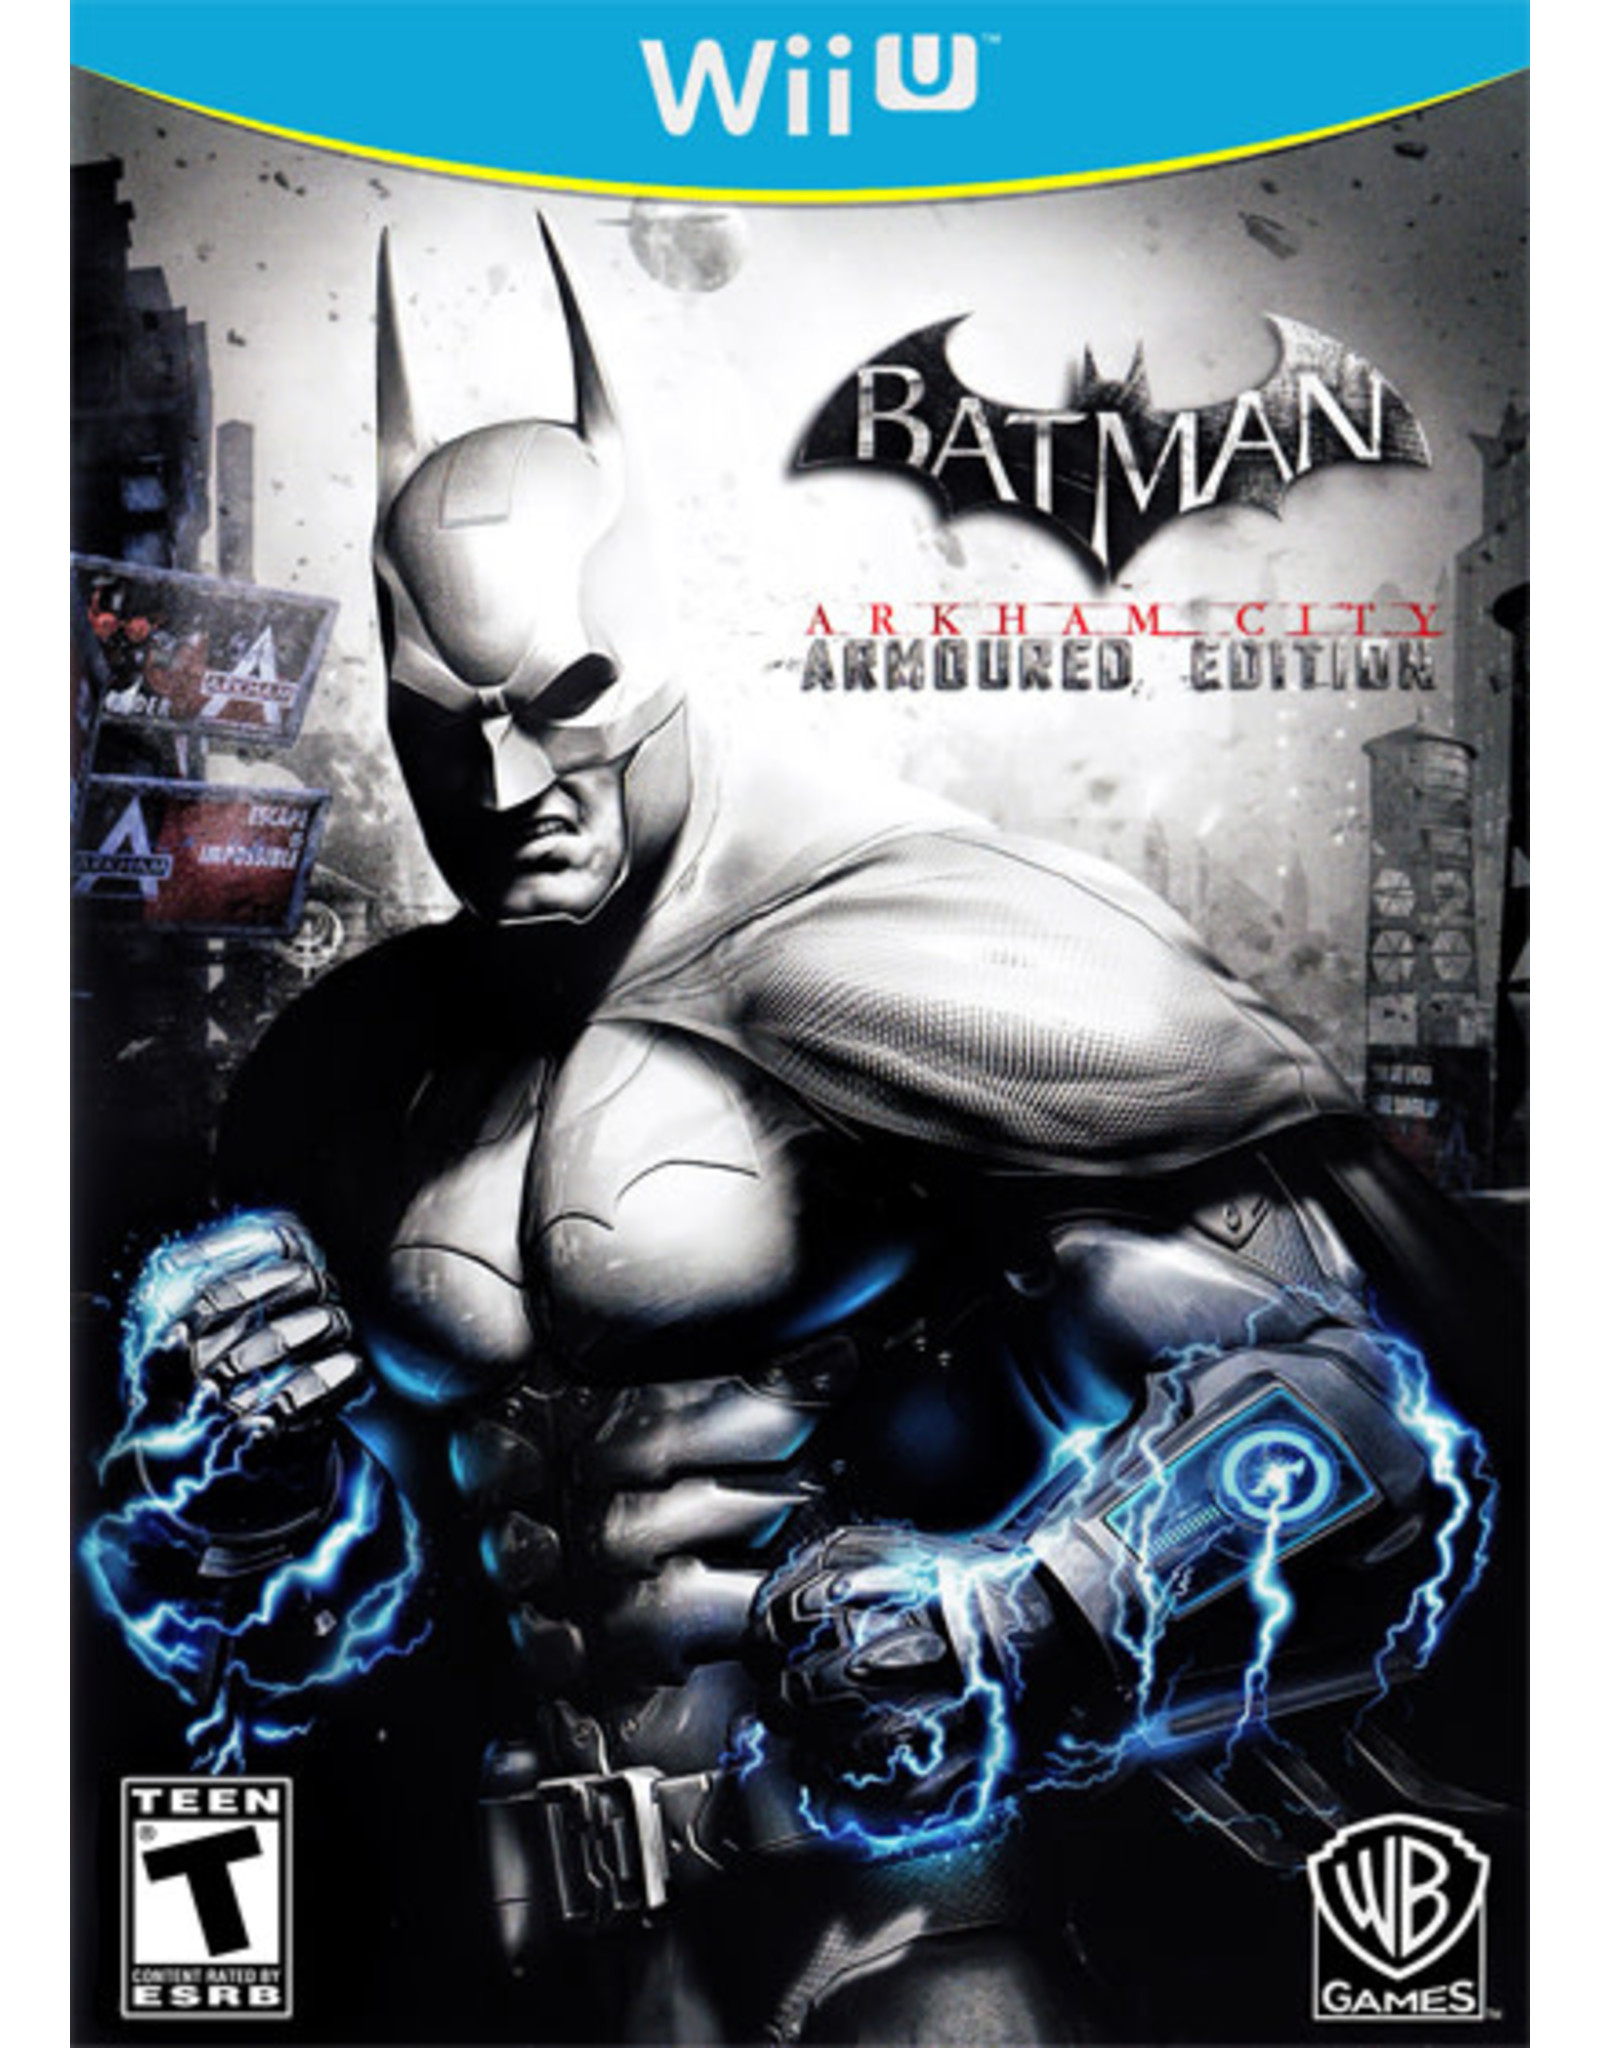 Wii U Batman: Arkham City Armored Edition (CiB)